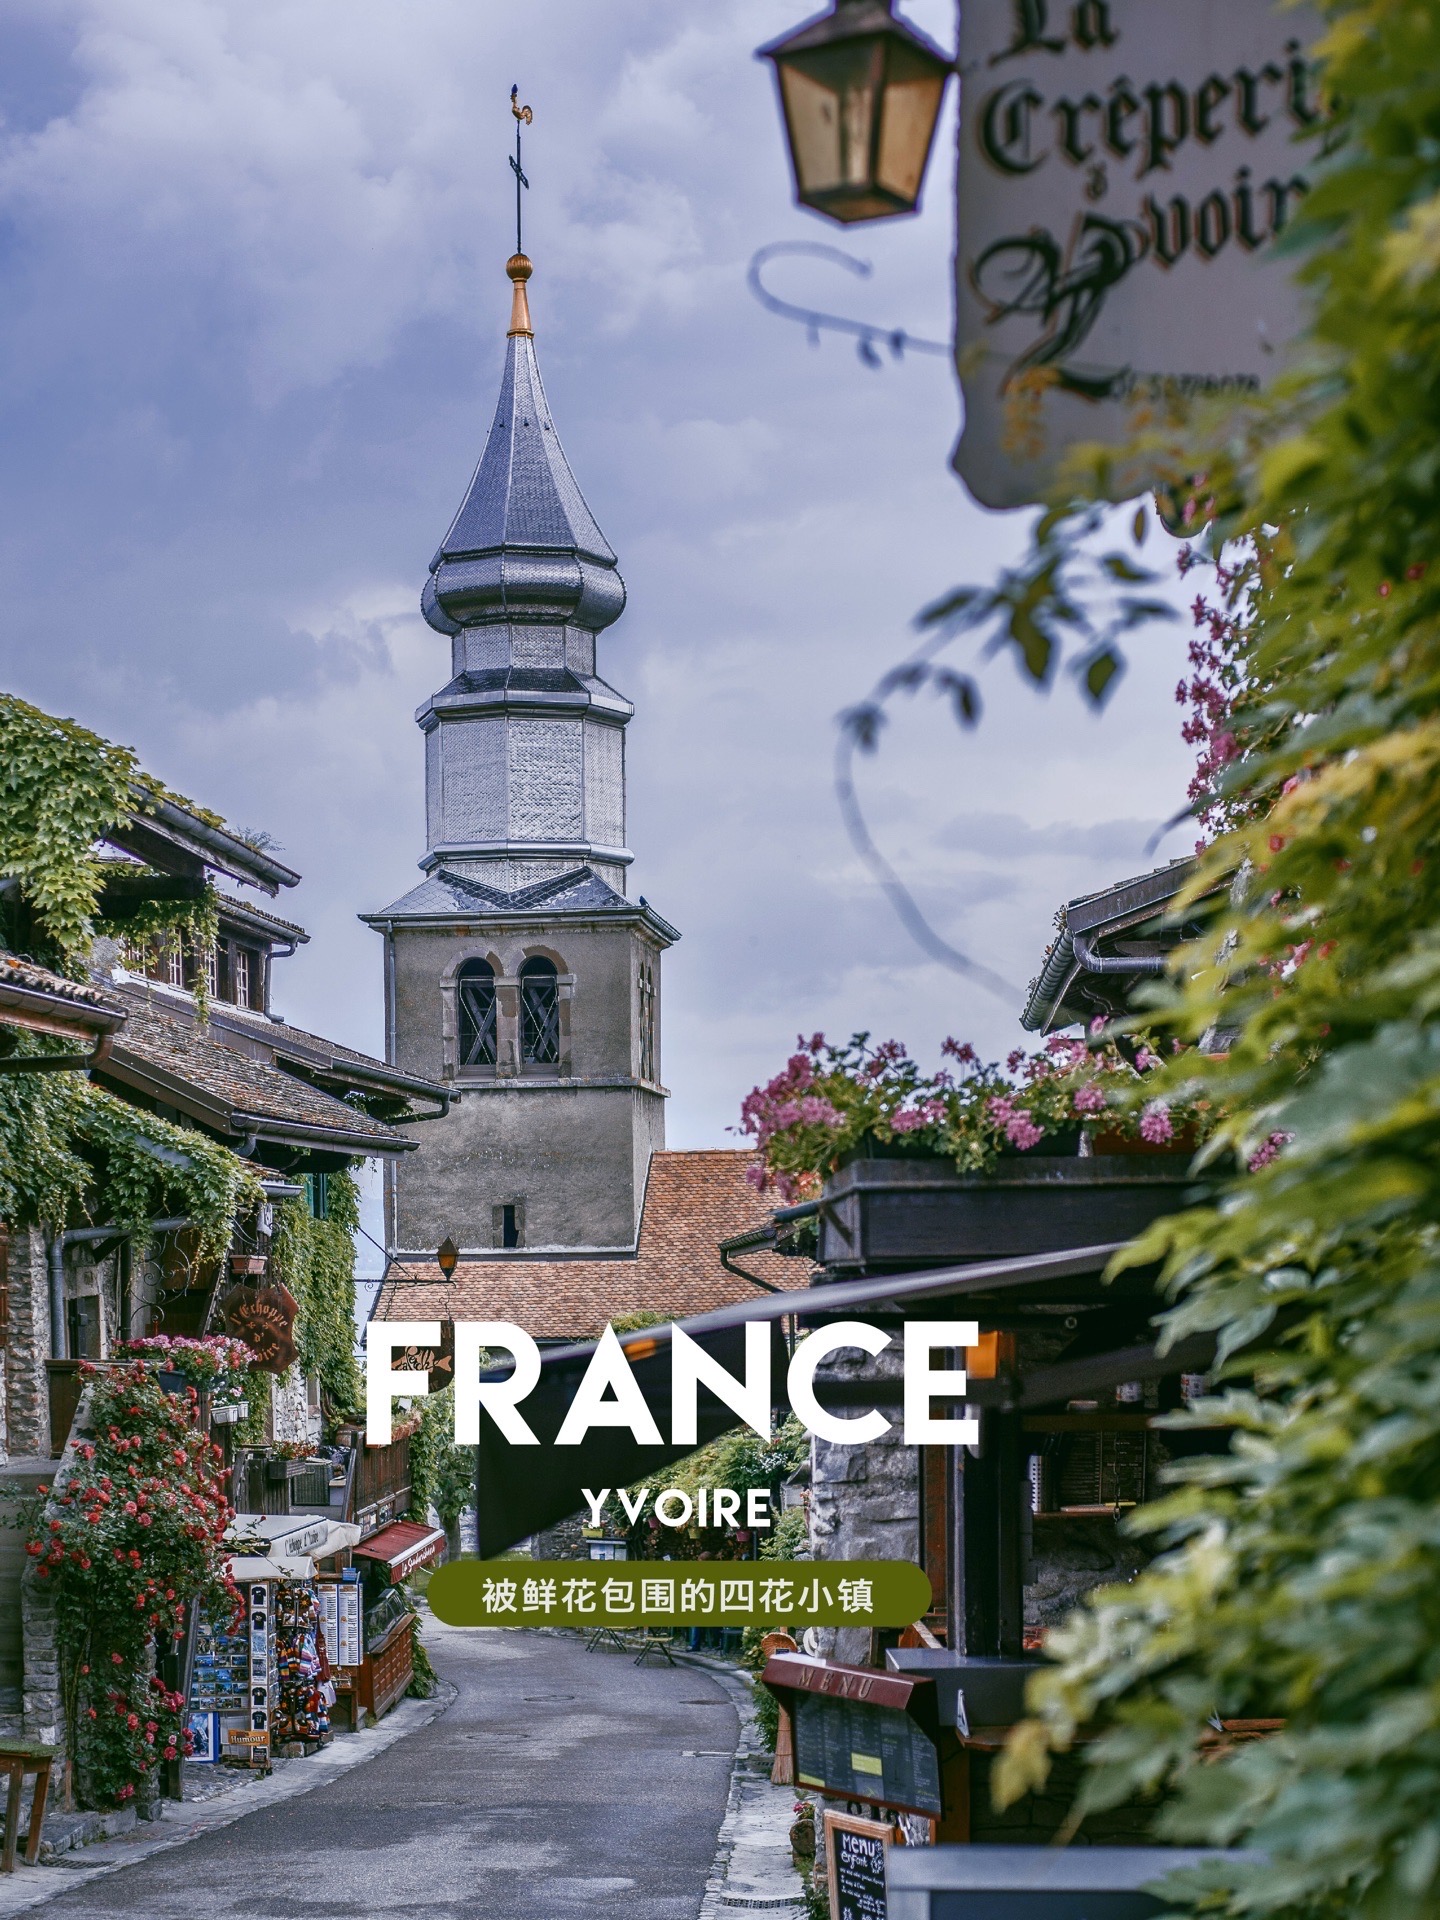 伊瓦尔Yvoire 法国东部四花小镇 位列法国最美丽小镇榜首 曾经代表法国参加世界最美小镇的比赛 这